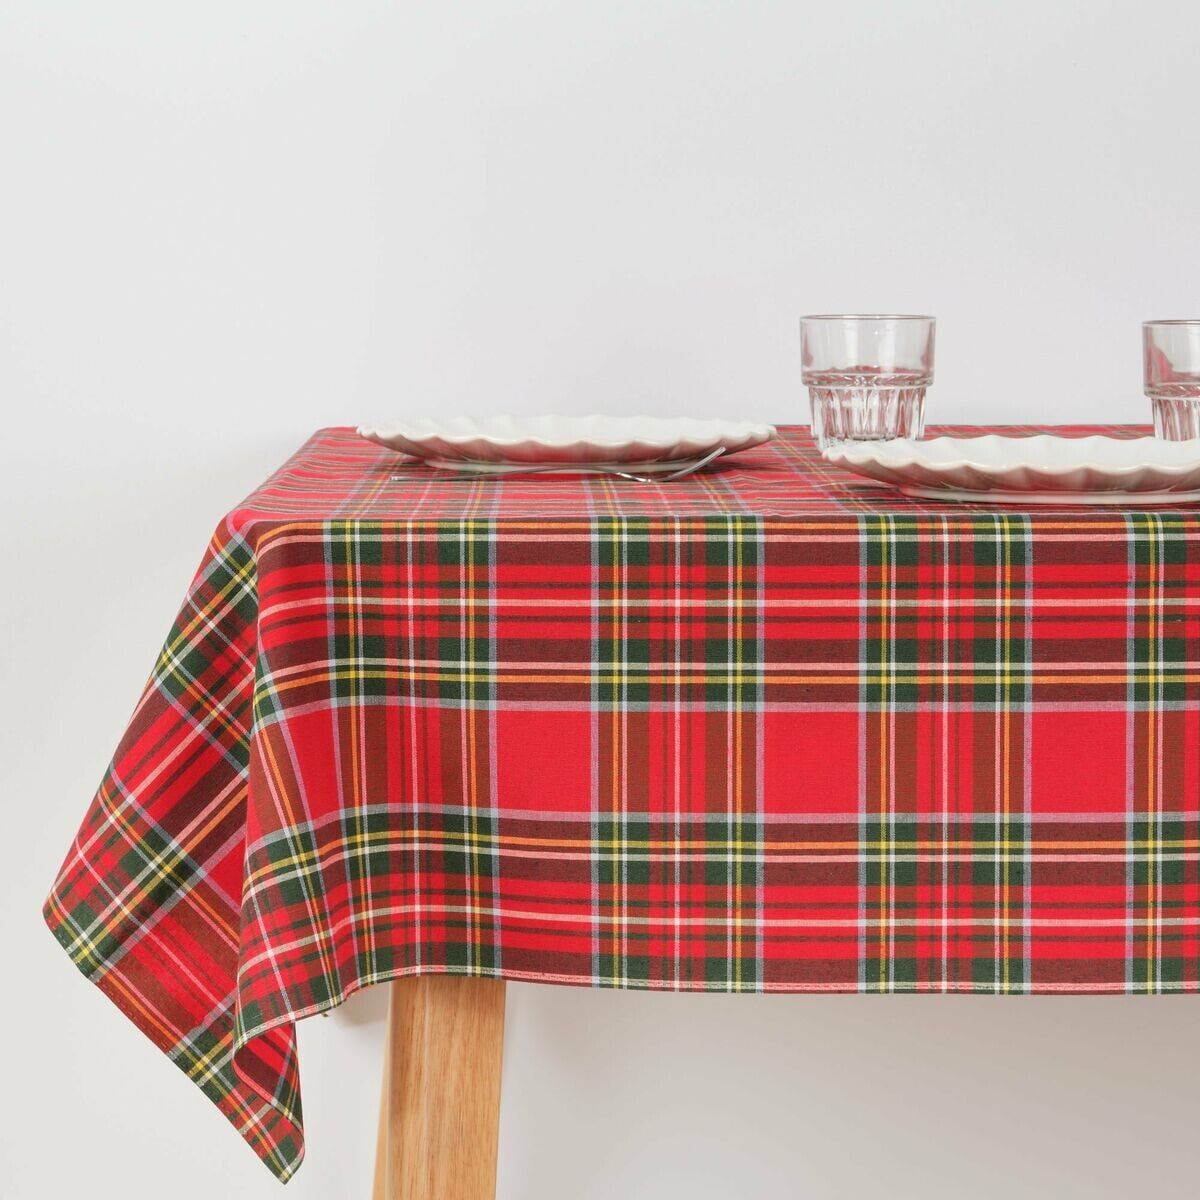 Stain-proof tablecloth Muaré 300 x 155 cm